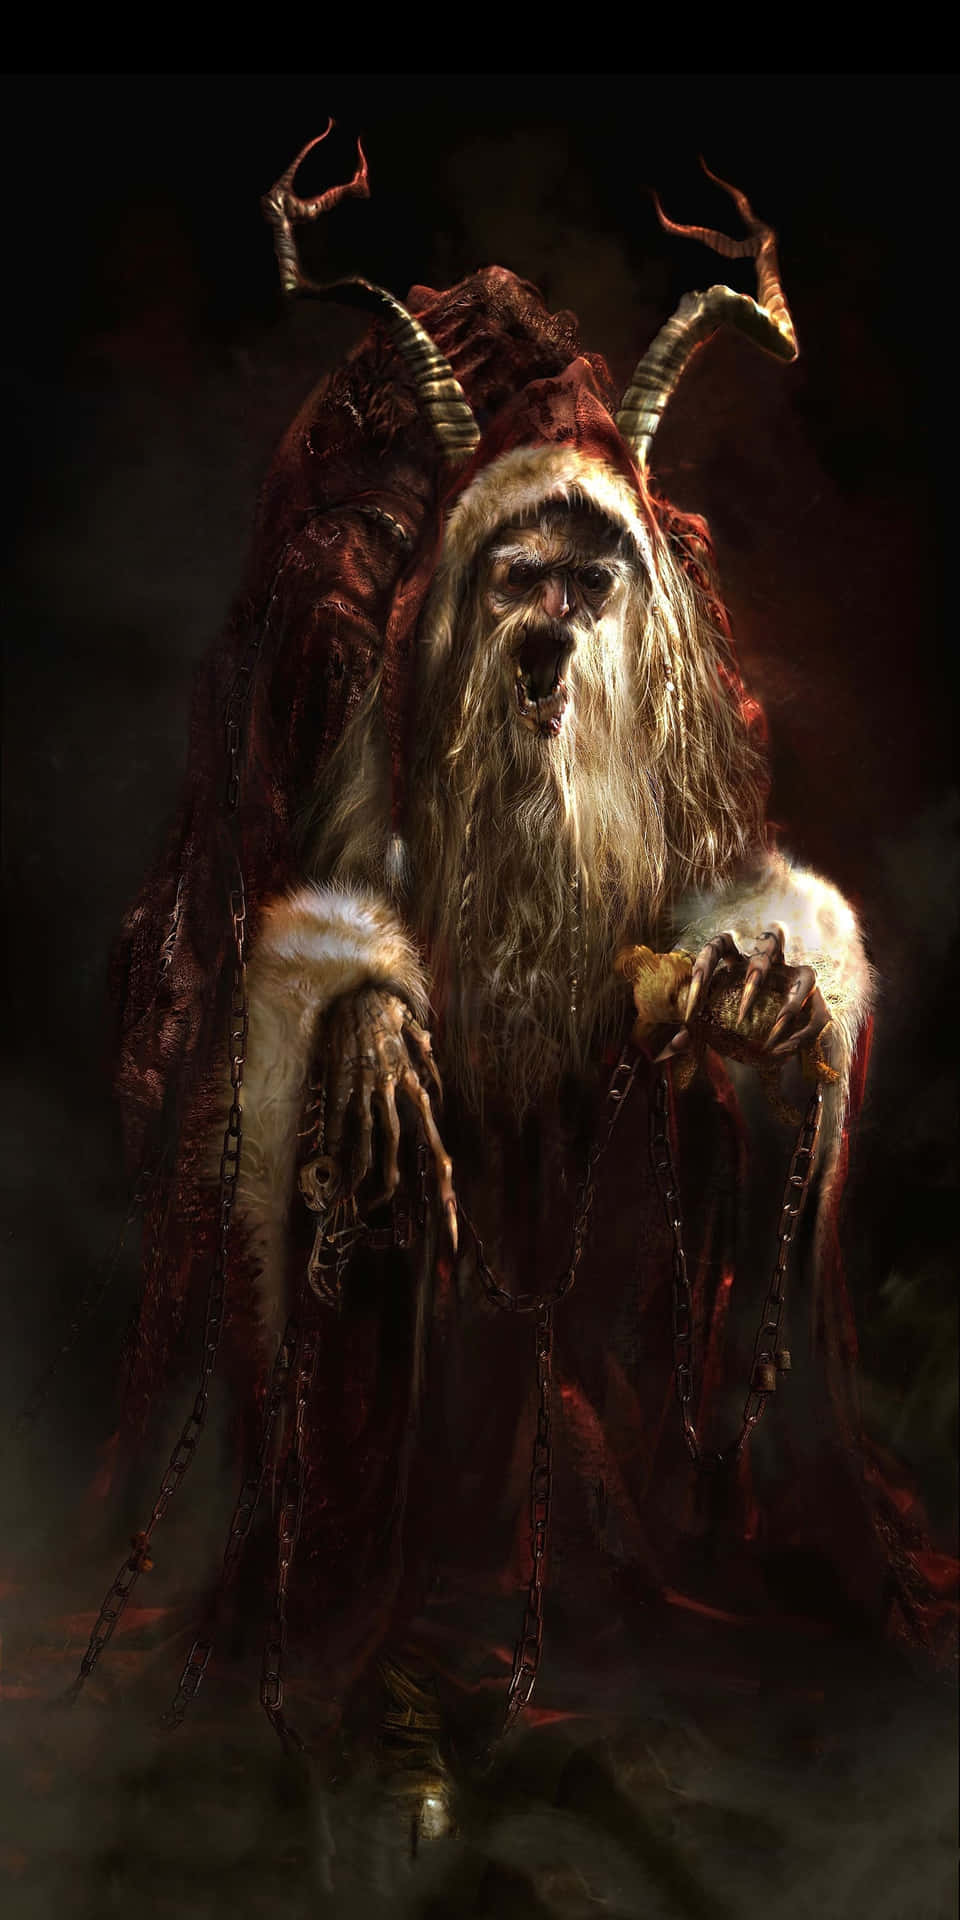 Krampus er en skabning i alpefolketro, der straffer uartige børn i julen. Wallpaper